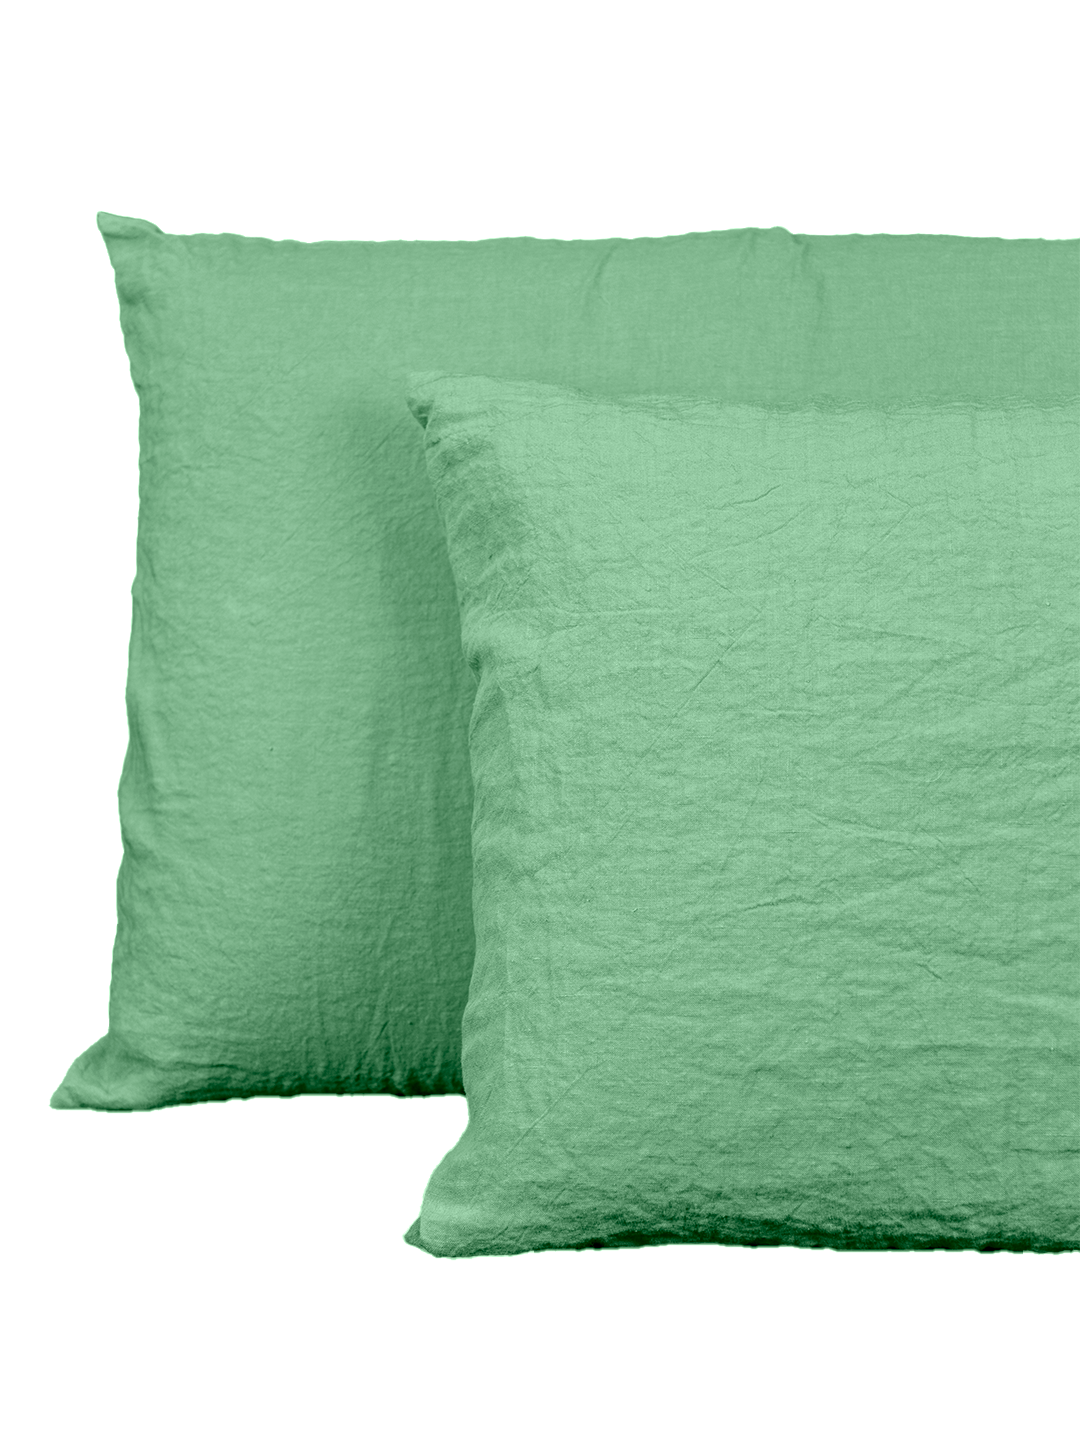 Fronha de almofada em linho verde, fabricada em Portugal, da marca LeCamaleon.